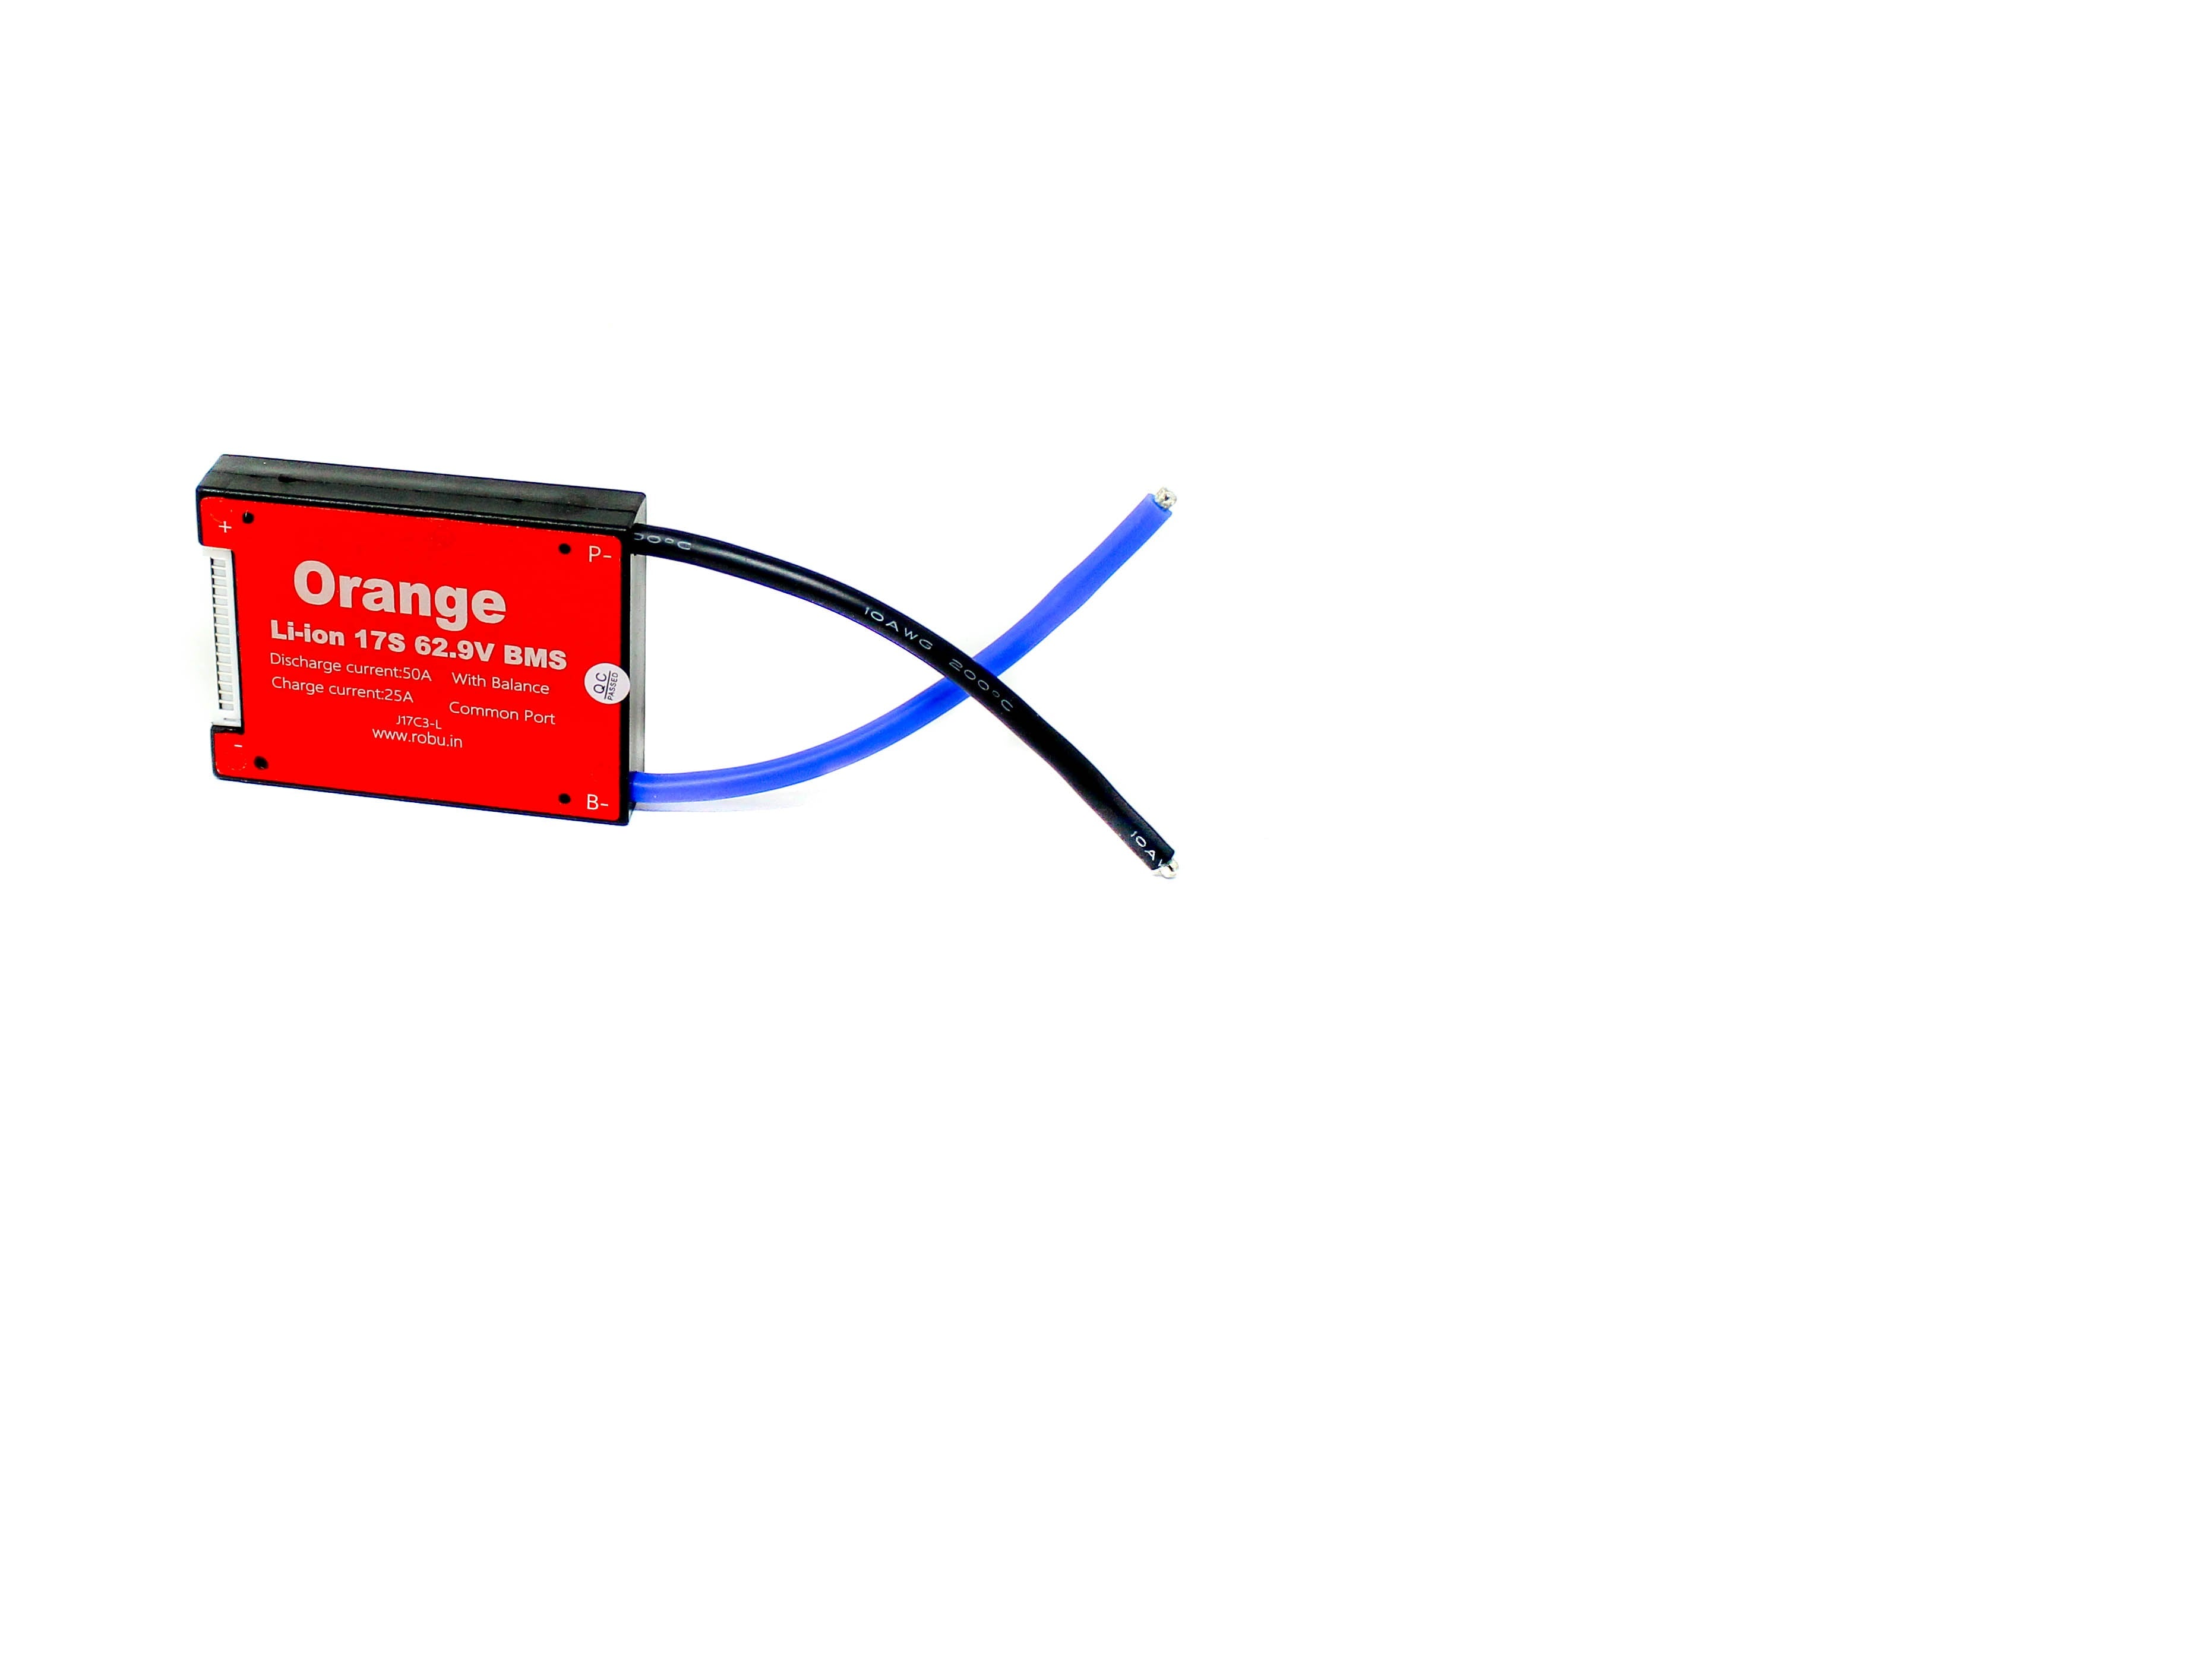 Orange Li-ion 17S 62.9V 50A Battery Management System